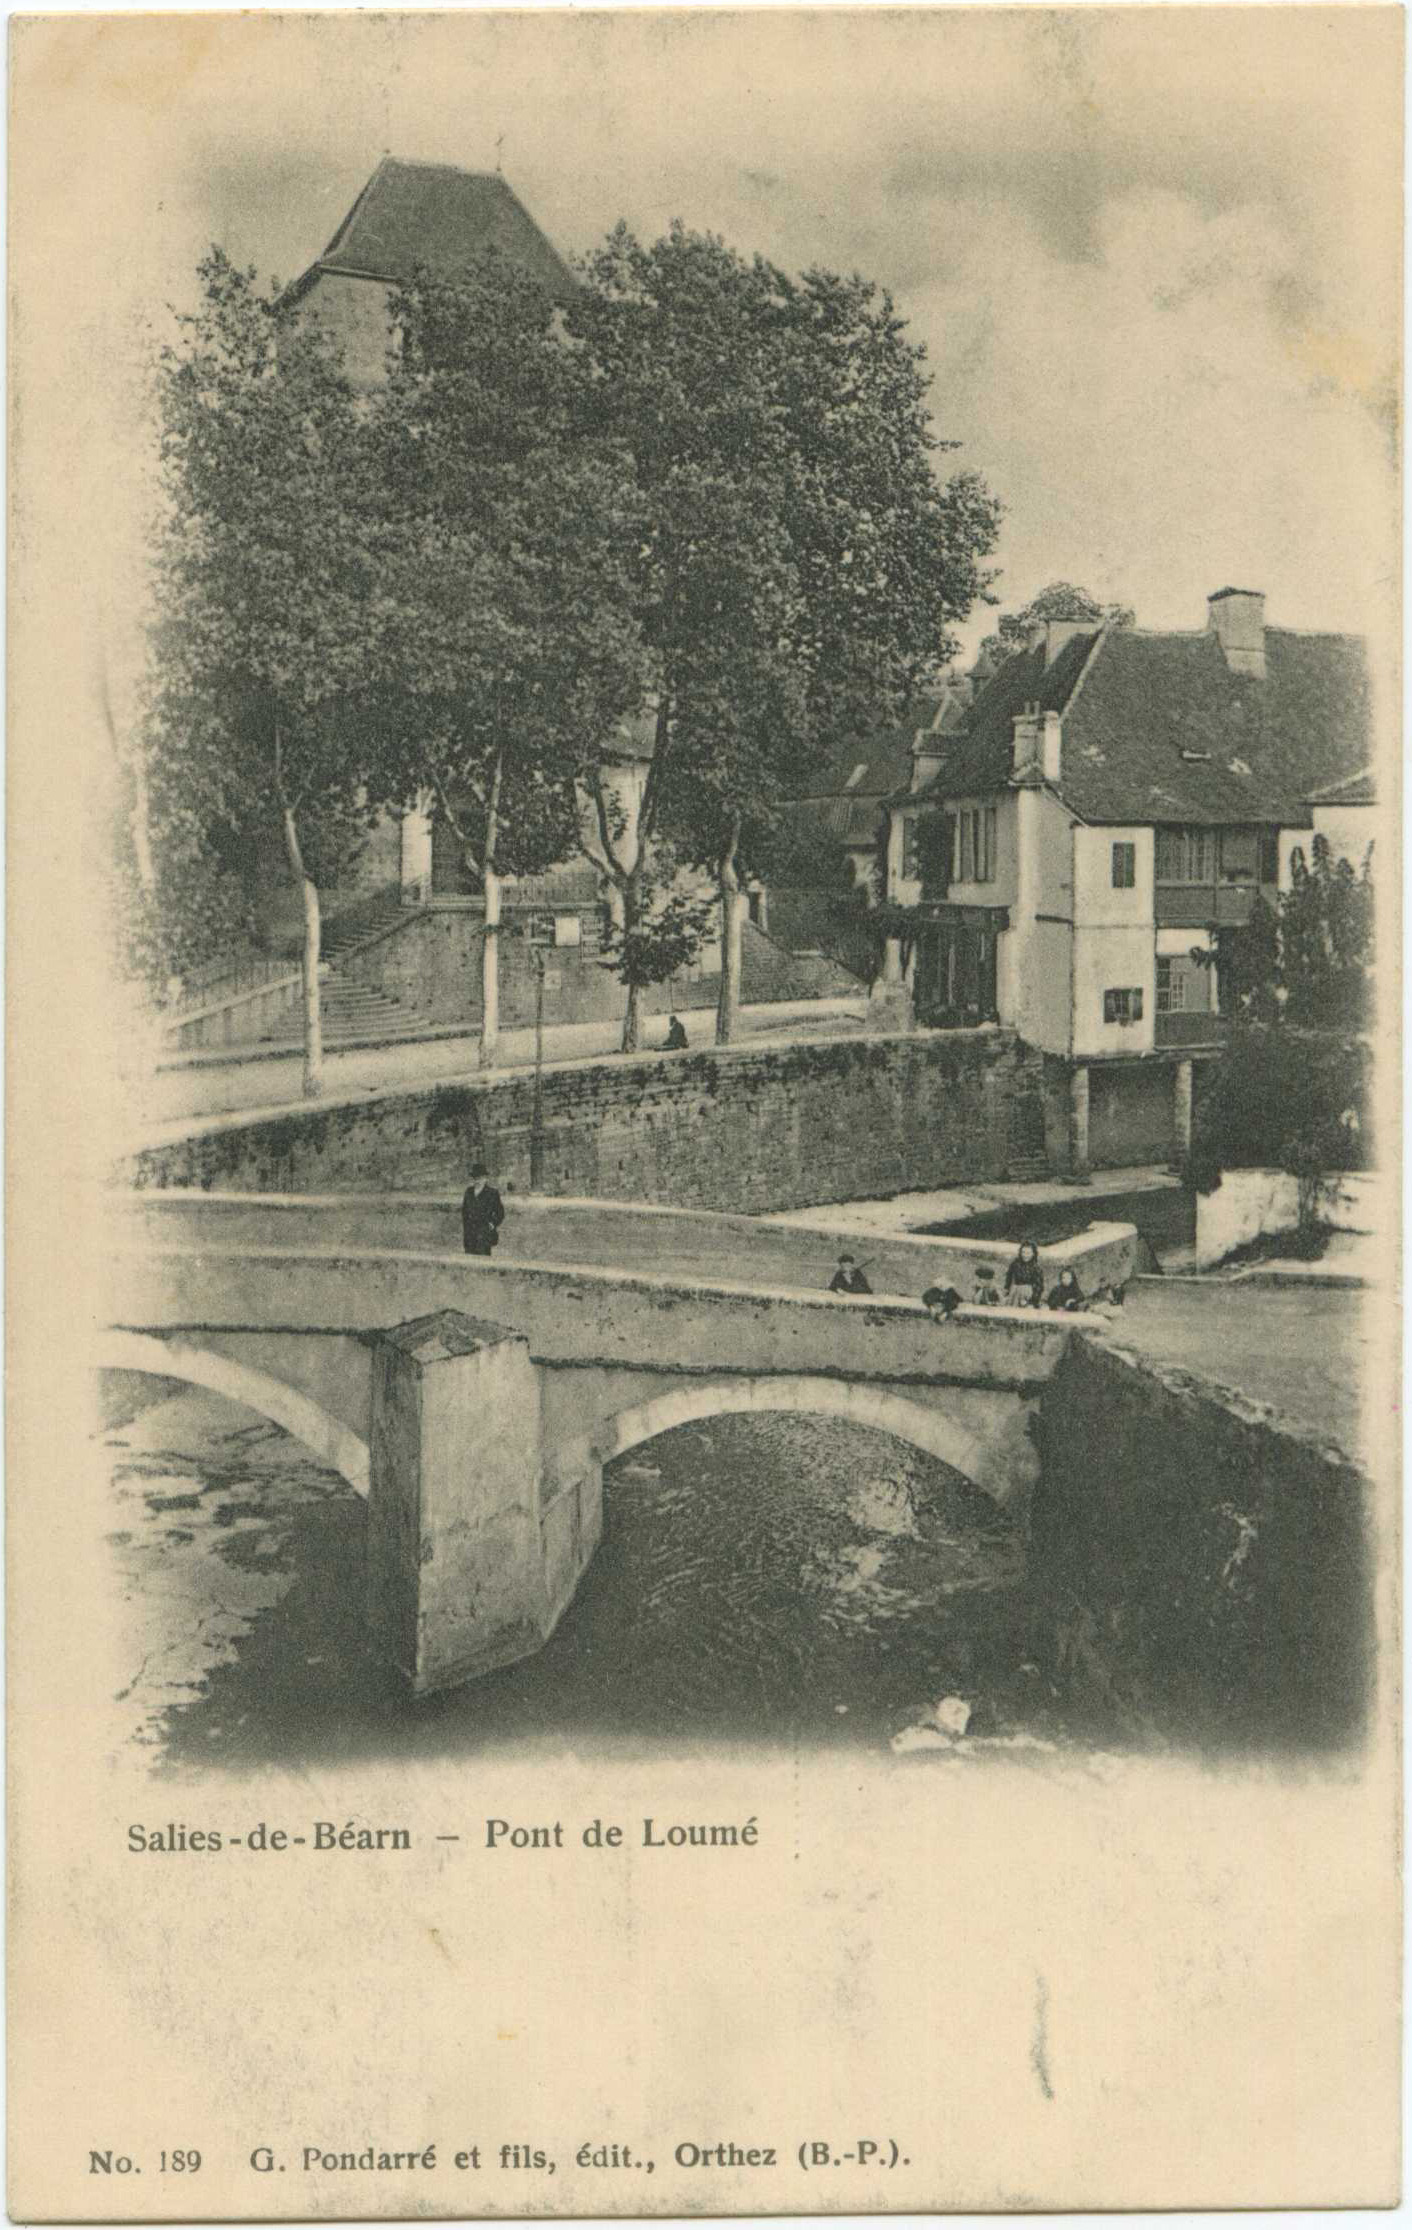 Salies-de-Béarn - Pont de Loumé